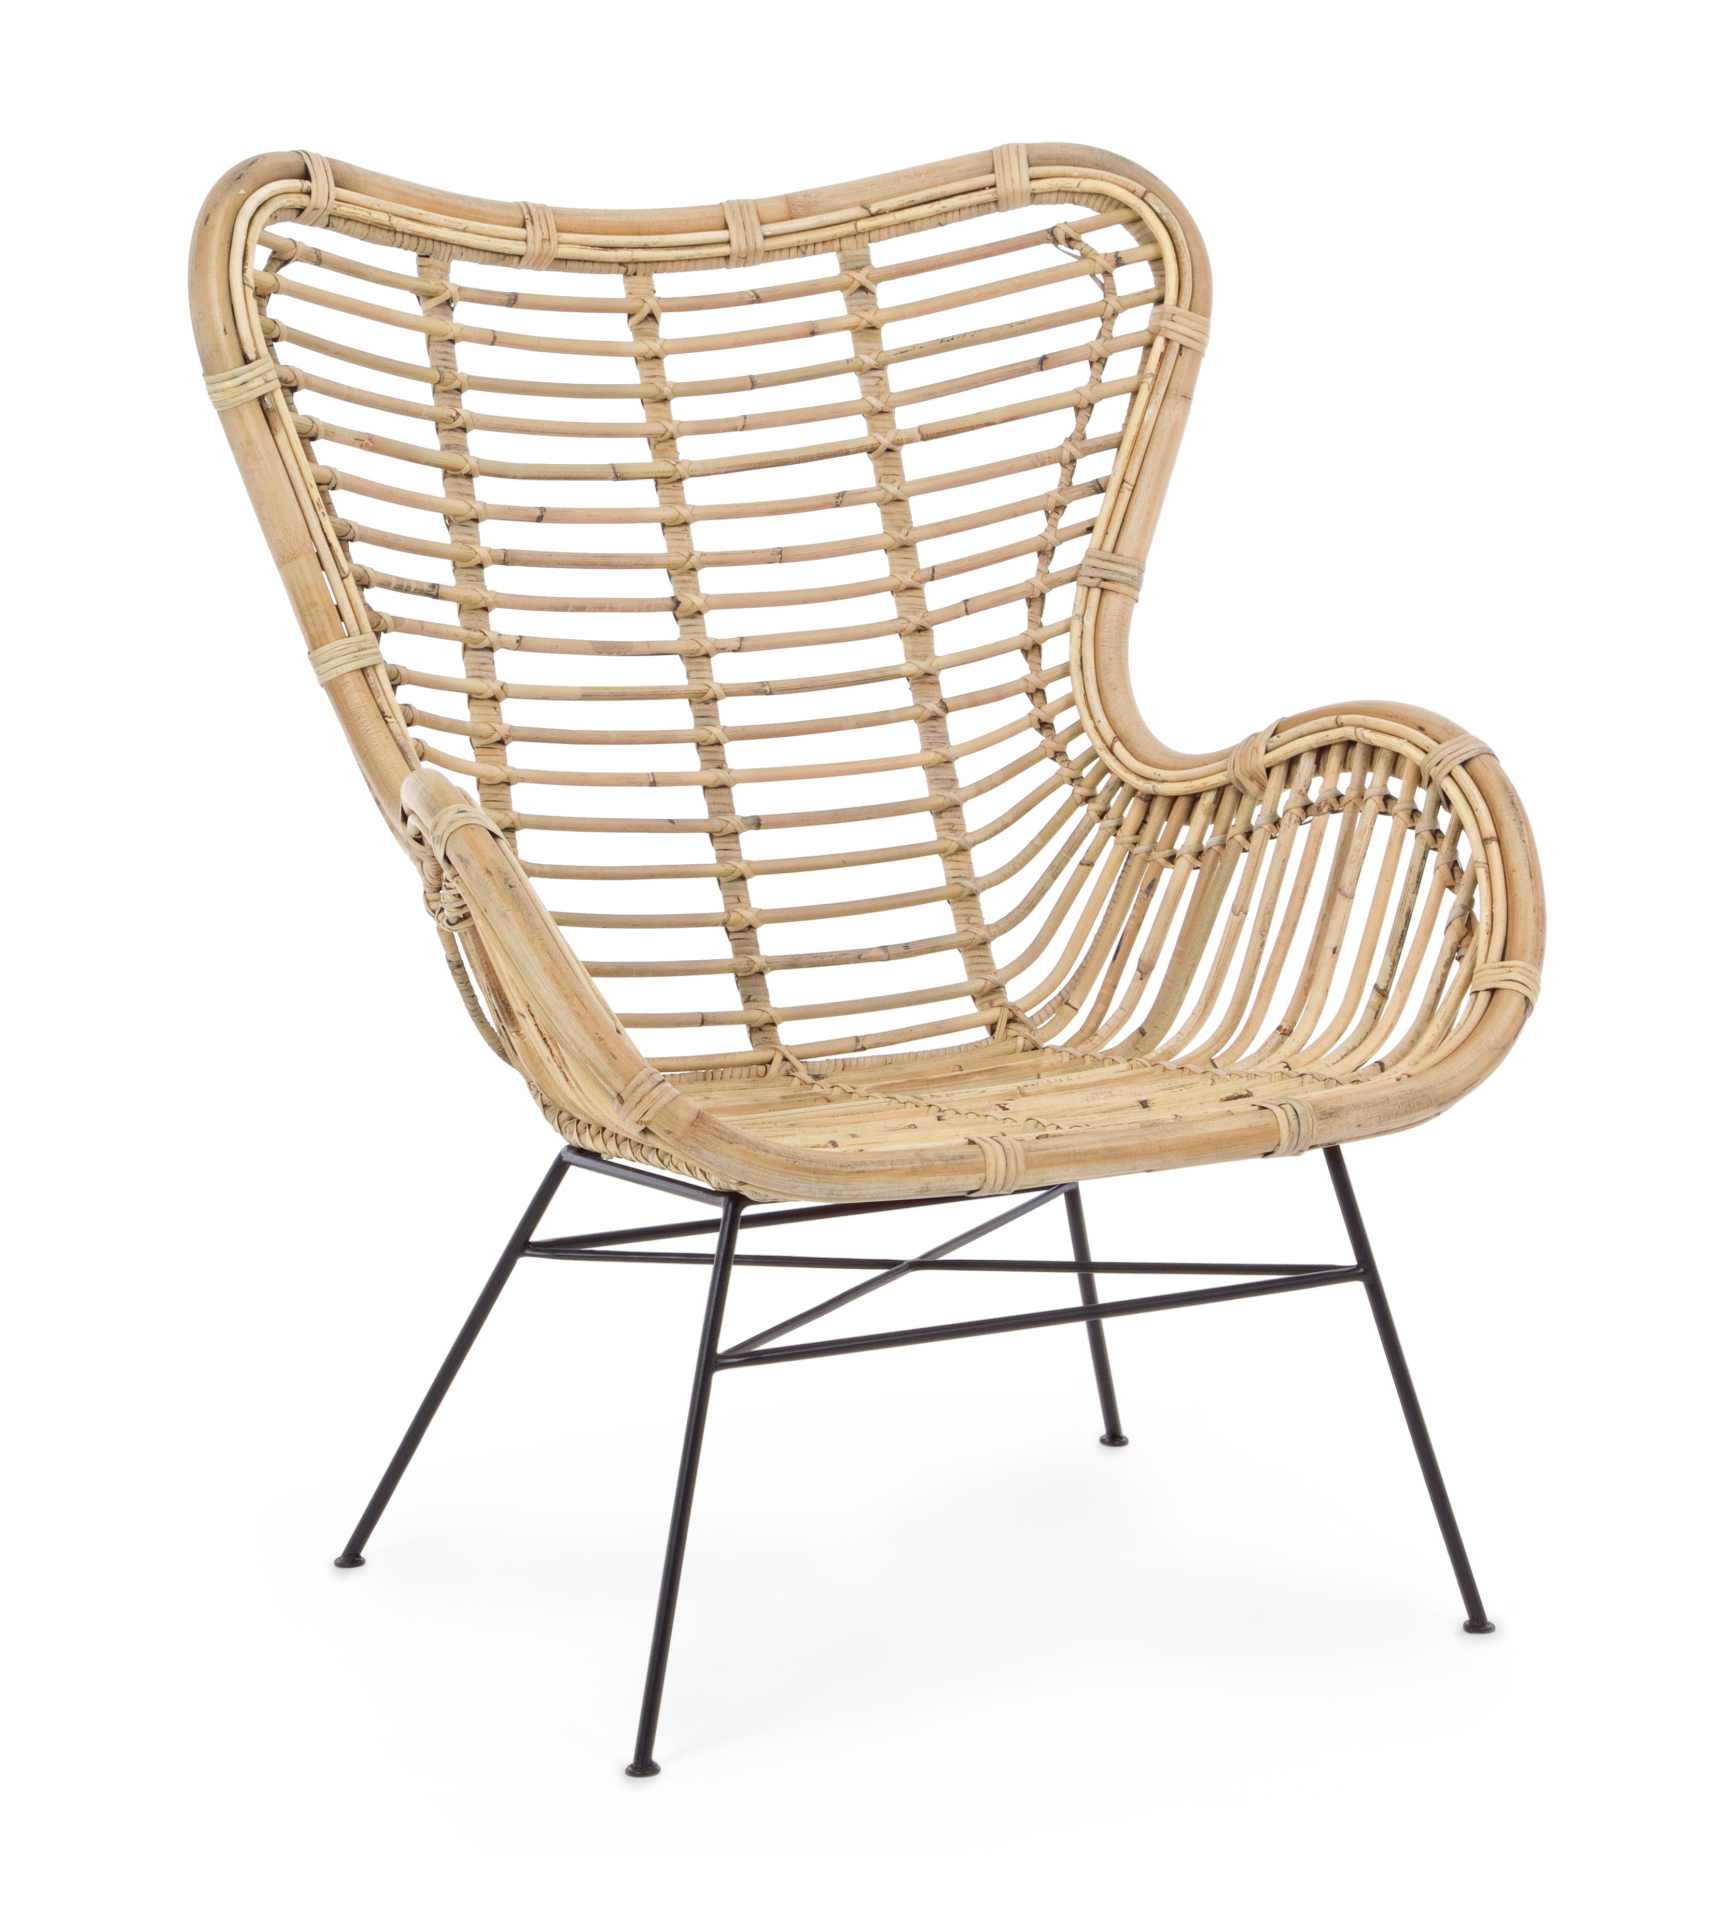 Der Sessel Casilda überzeugt mit seinem klassischen Design. Gefertigt wurde er aus Rattan, welches einen natürlichen Farbton besitzt. Das Gestell ist aus Metall und hat eine schwarze Farbe. Der Sessel besitzt eine Sitzhöhe von 37 cm. Die Breite beträgt 74